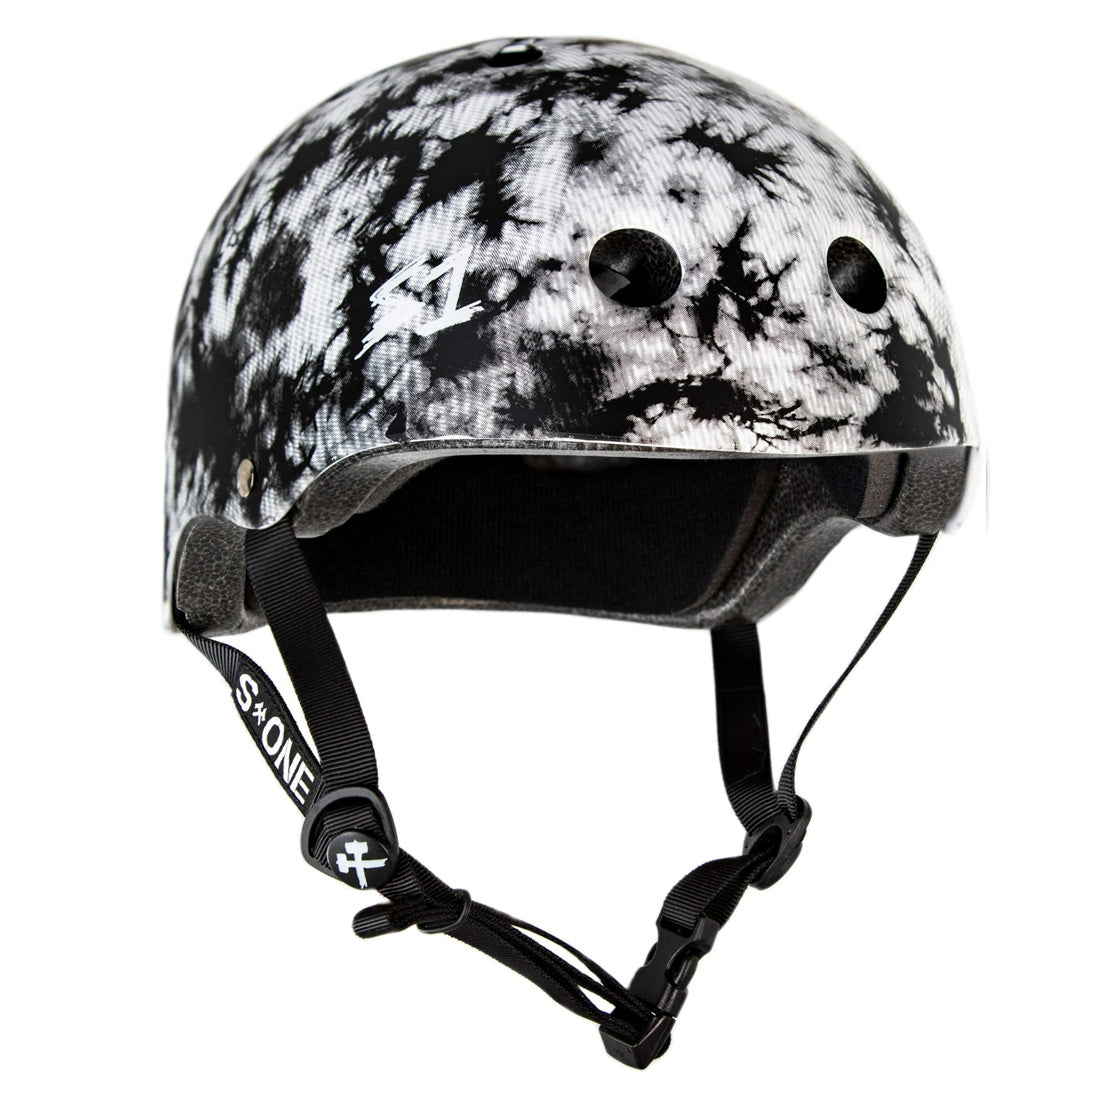 S-One Lifer Helmet - Tie Dye Black/White Helmets